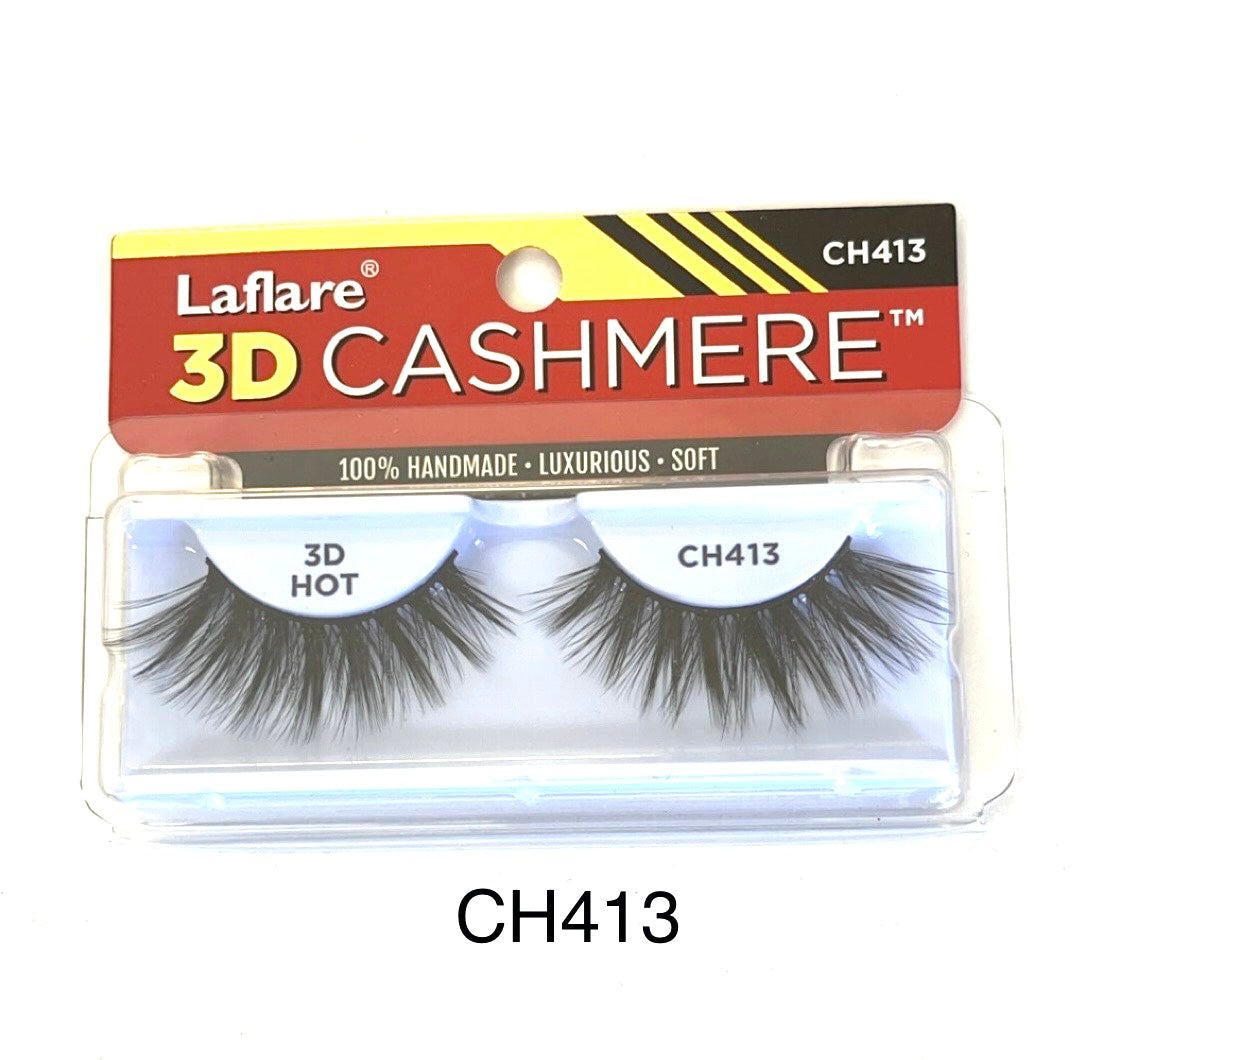 Laflare 3D Cashmere CH413